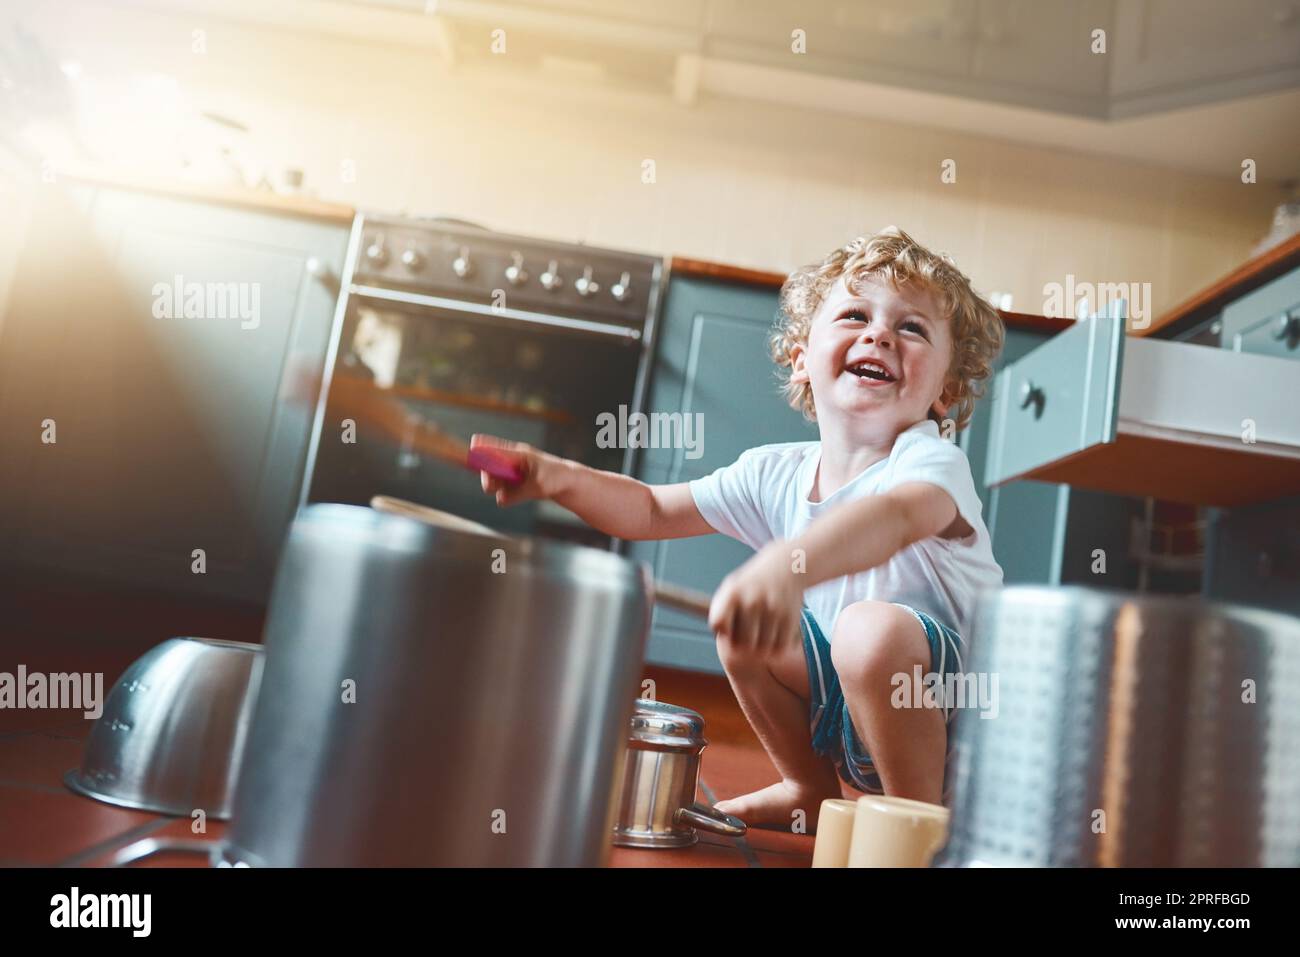 La musica in qualsiasi forma aiuta lo sviluppo di un bambino. Ritratto di un adorabile ragazzino che gioca con pentole in cucina. Foto Stock